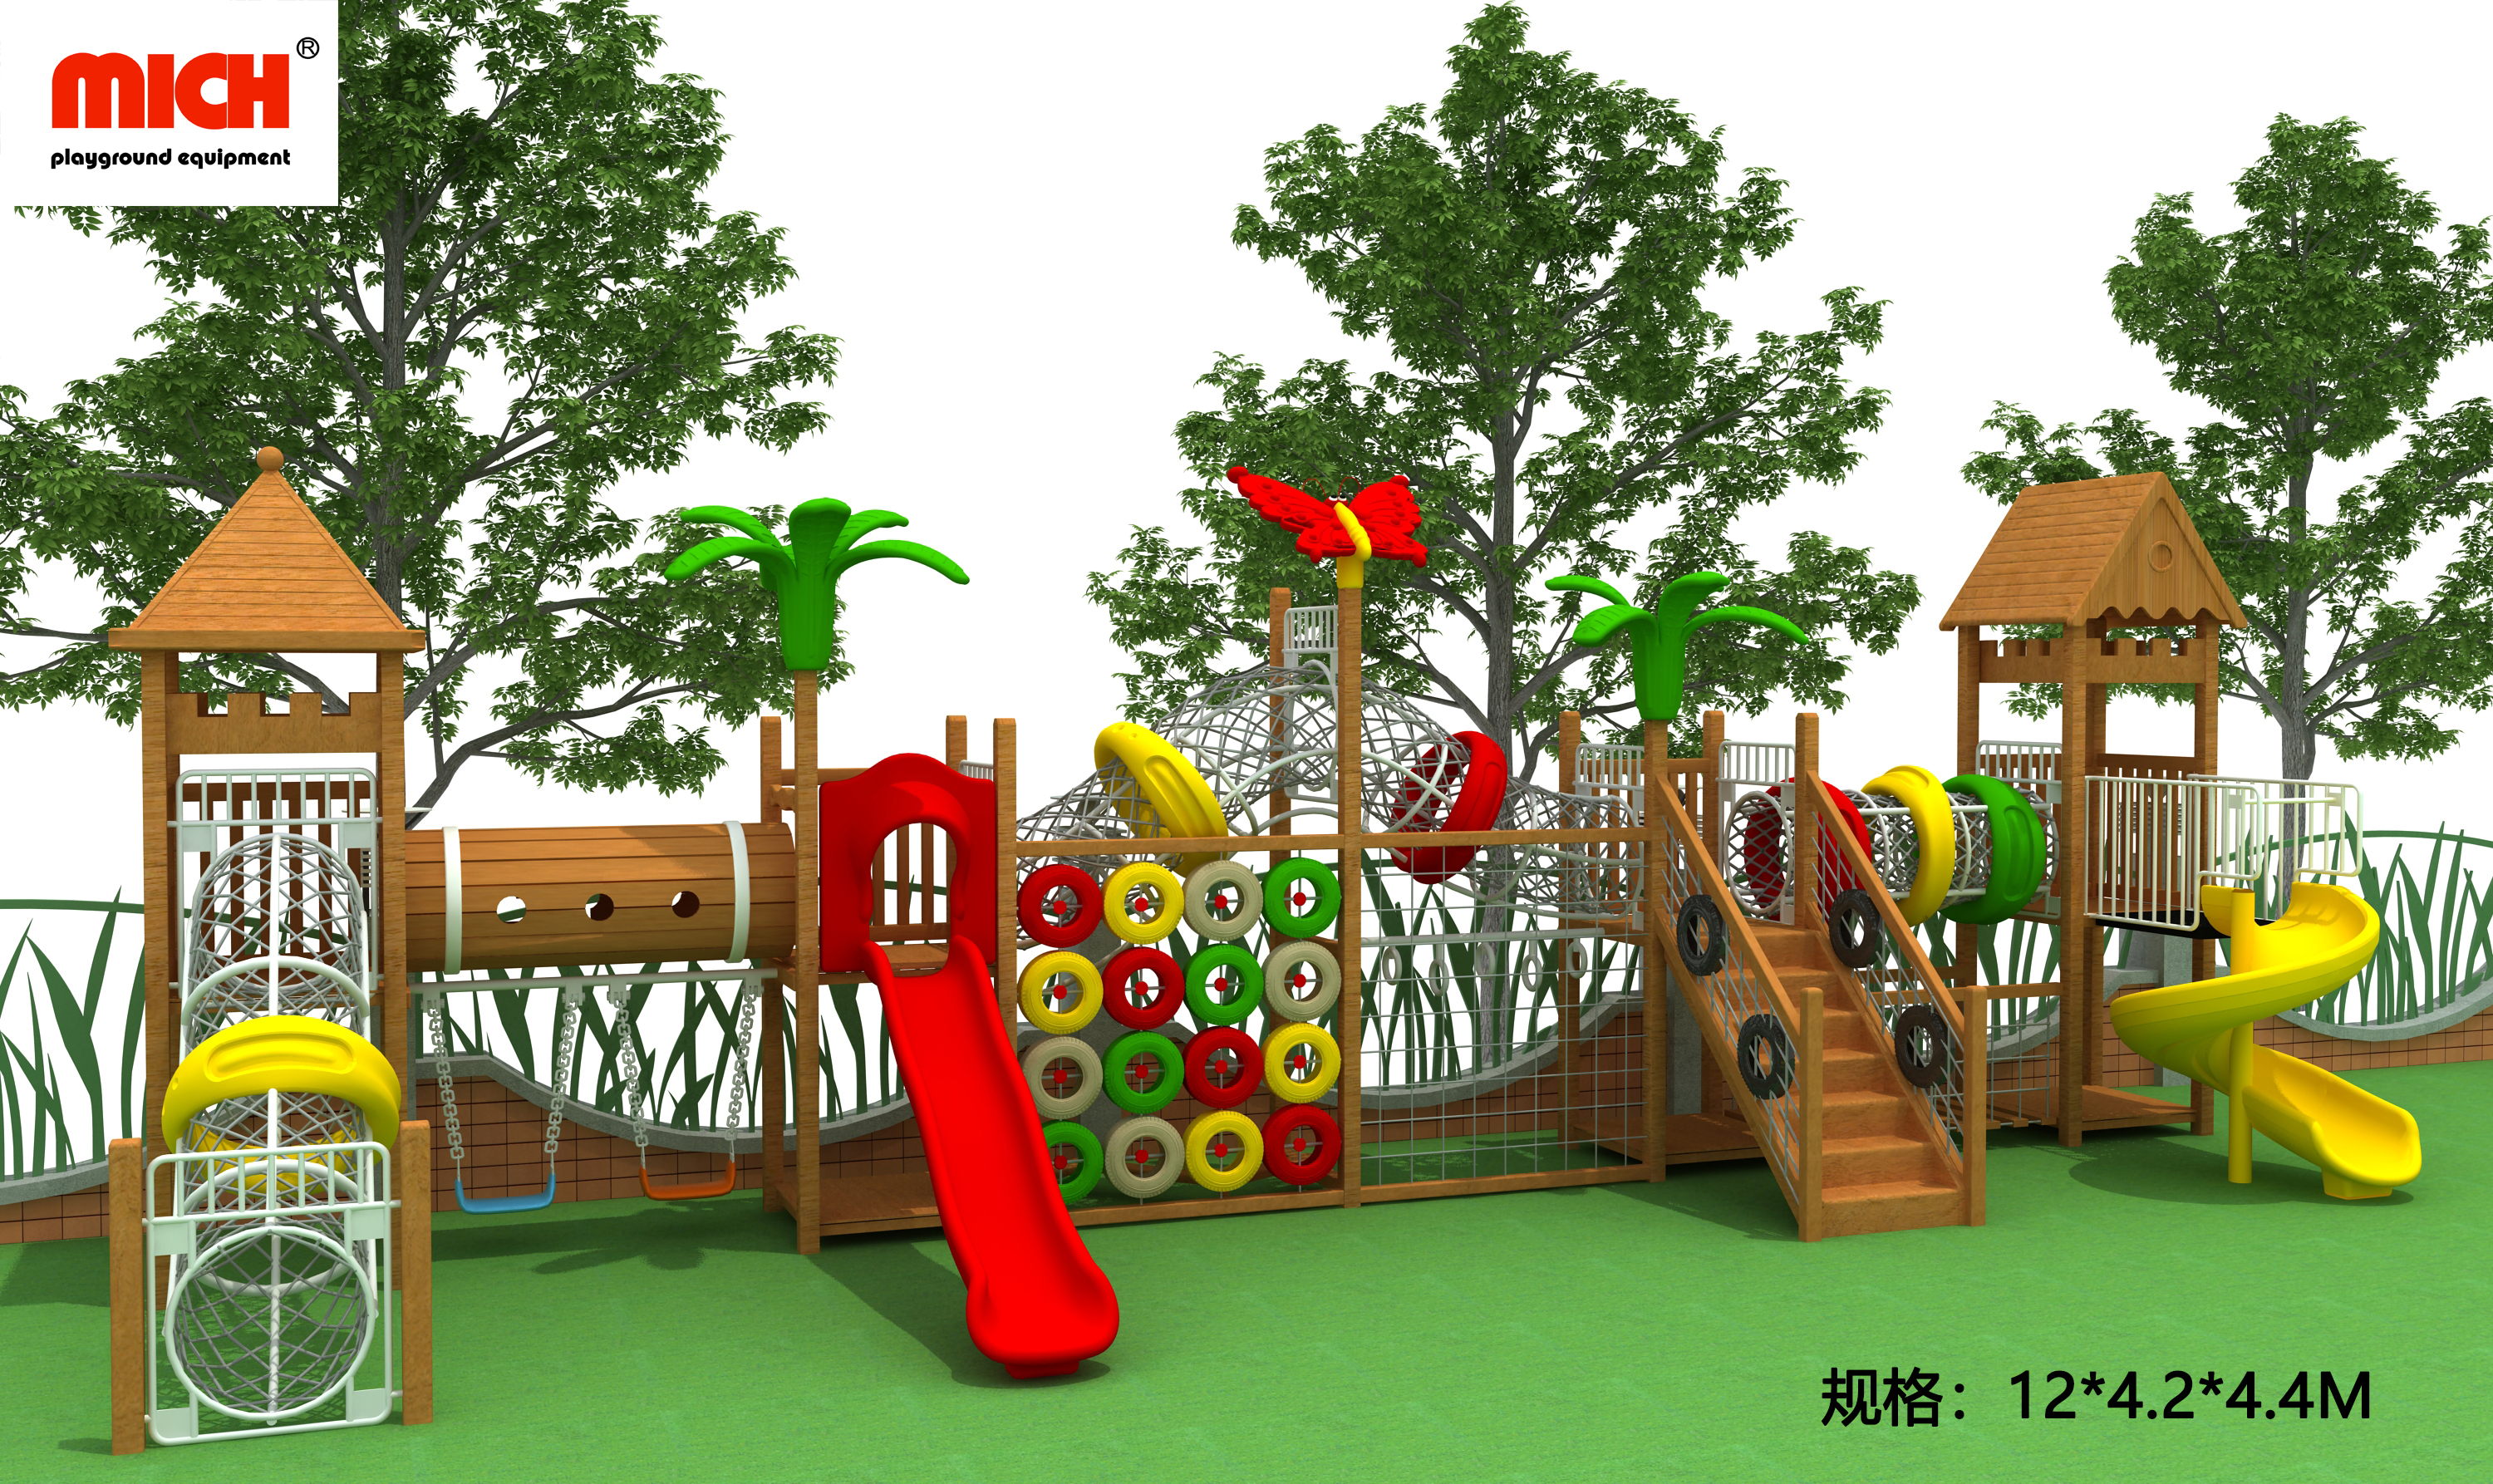 Como fazer melhor uso de playgrounds personalizados fora do padrão?